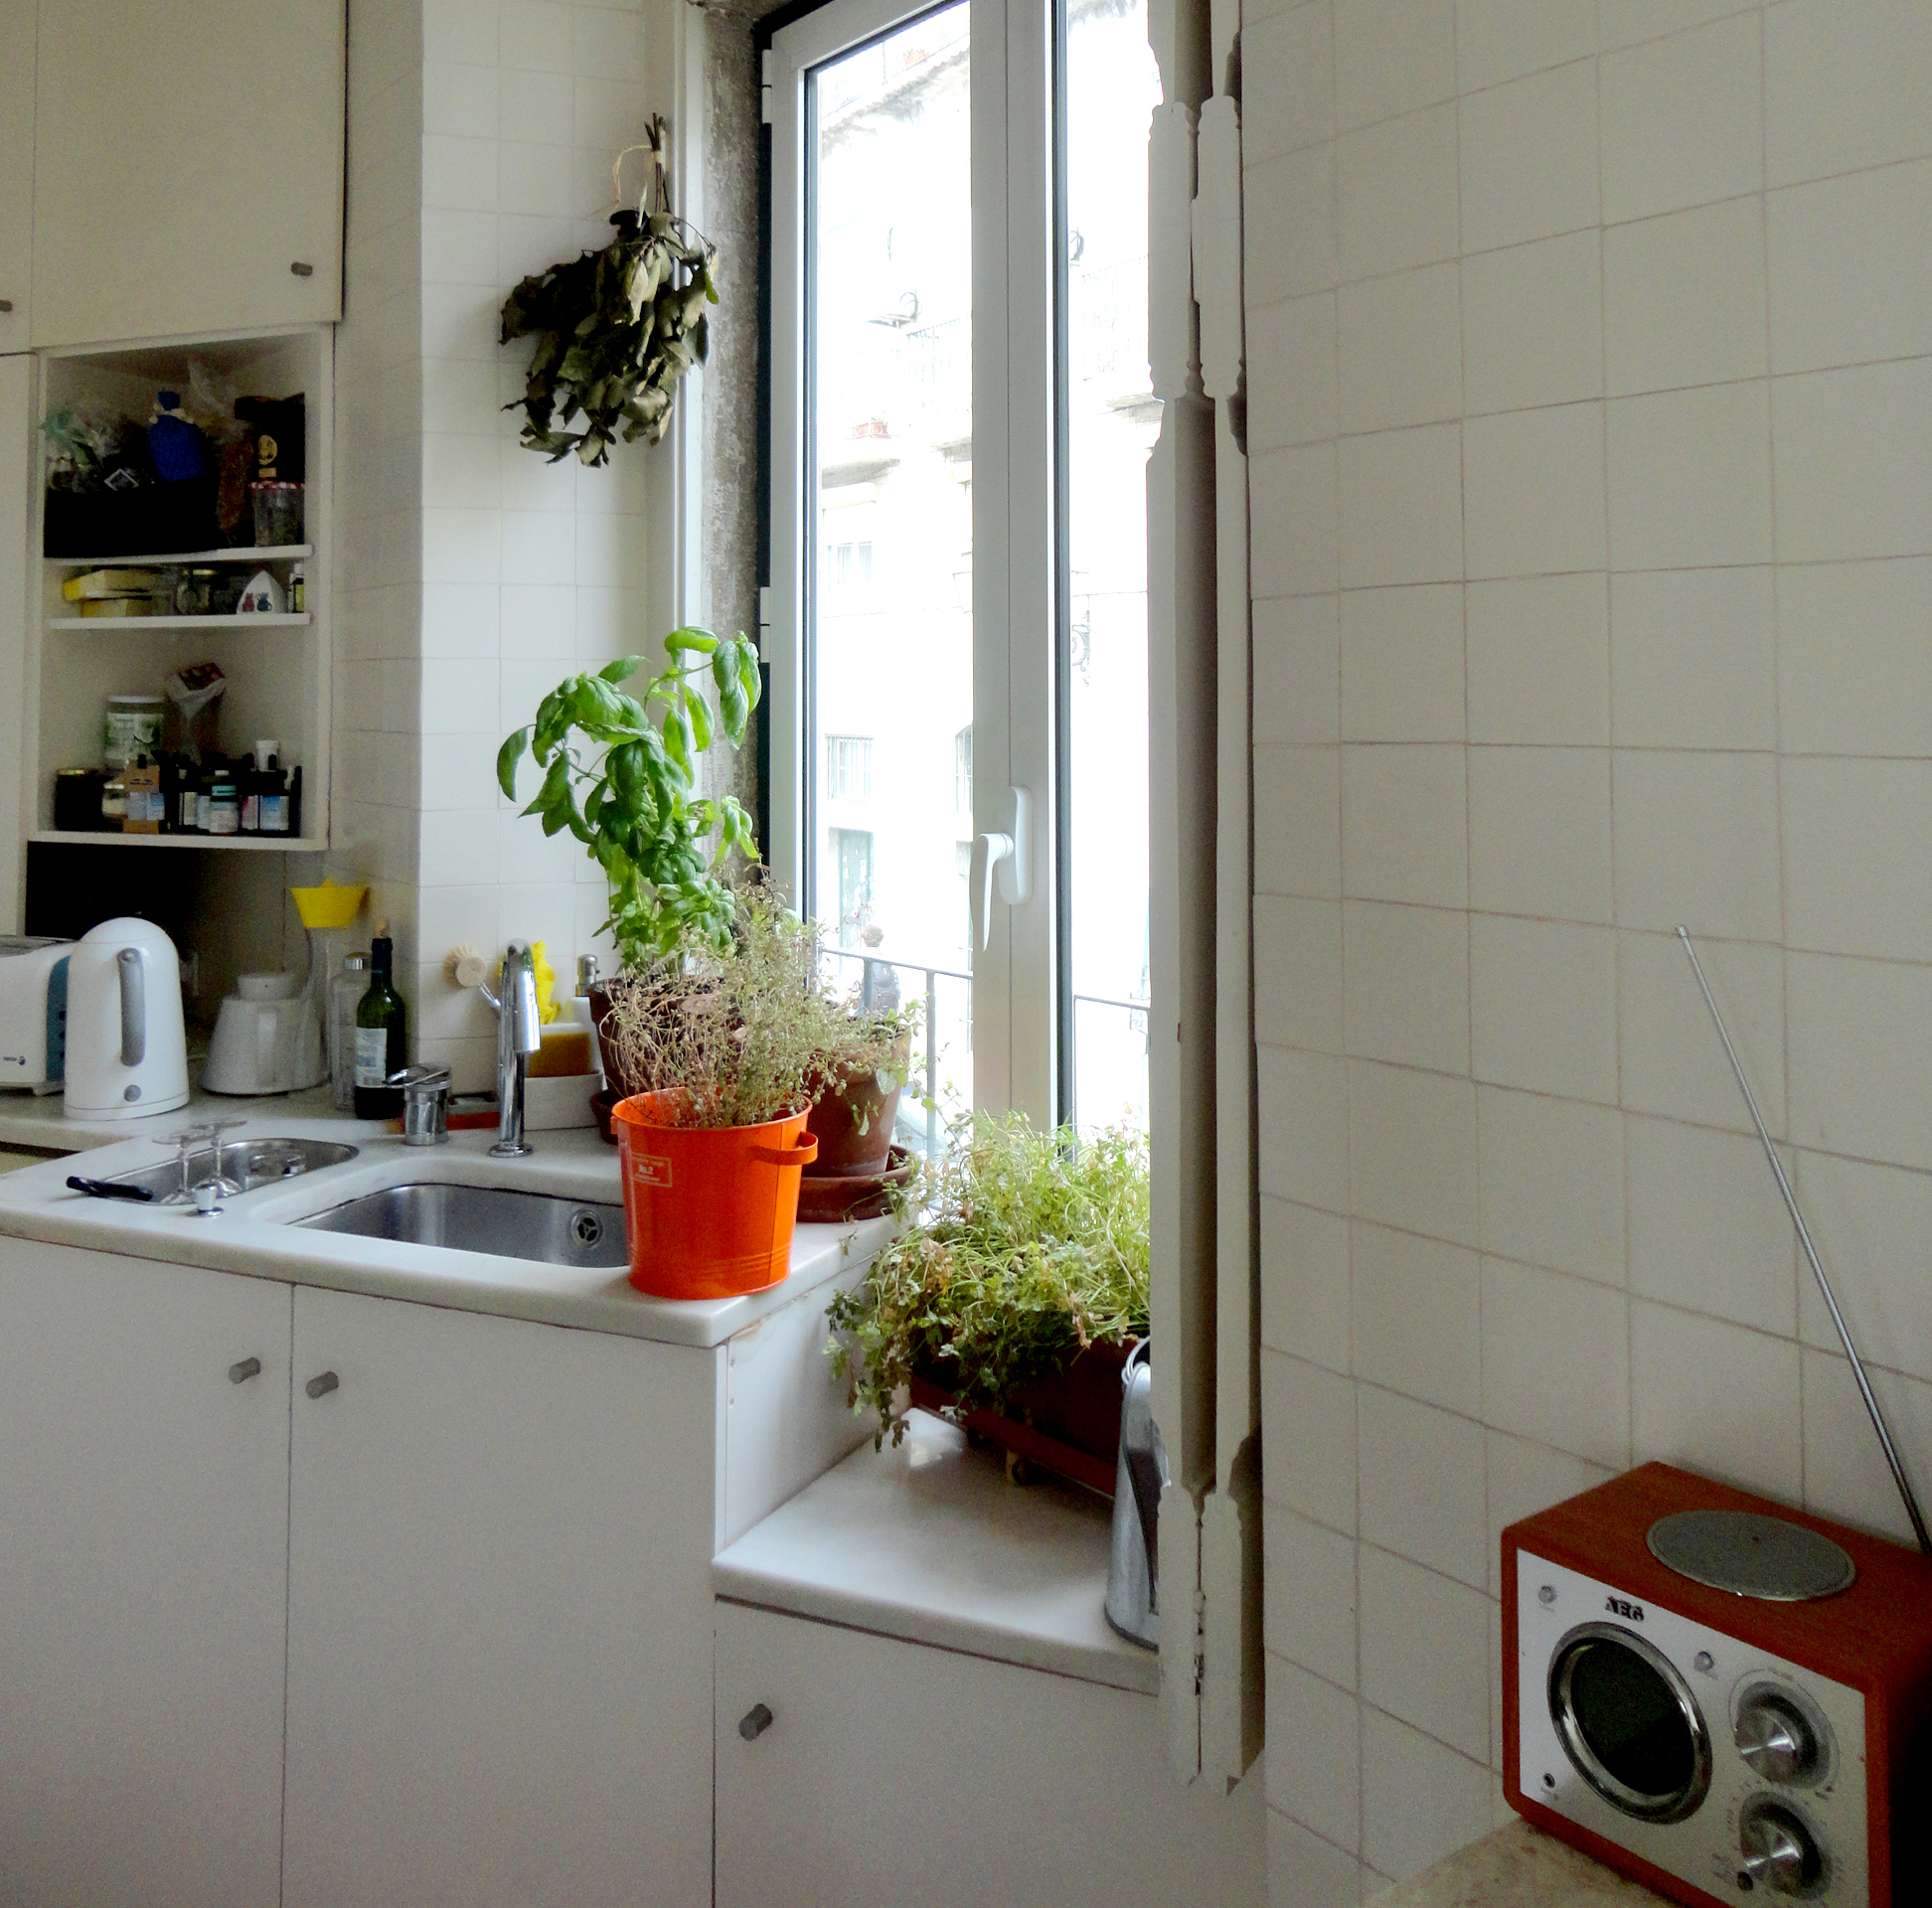  uma cozinha portuguesa, com certeza - rádio para dar conversa de fundo e aromas à mão de cozinhar.&nbsp; 